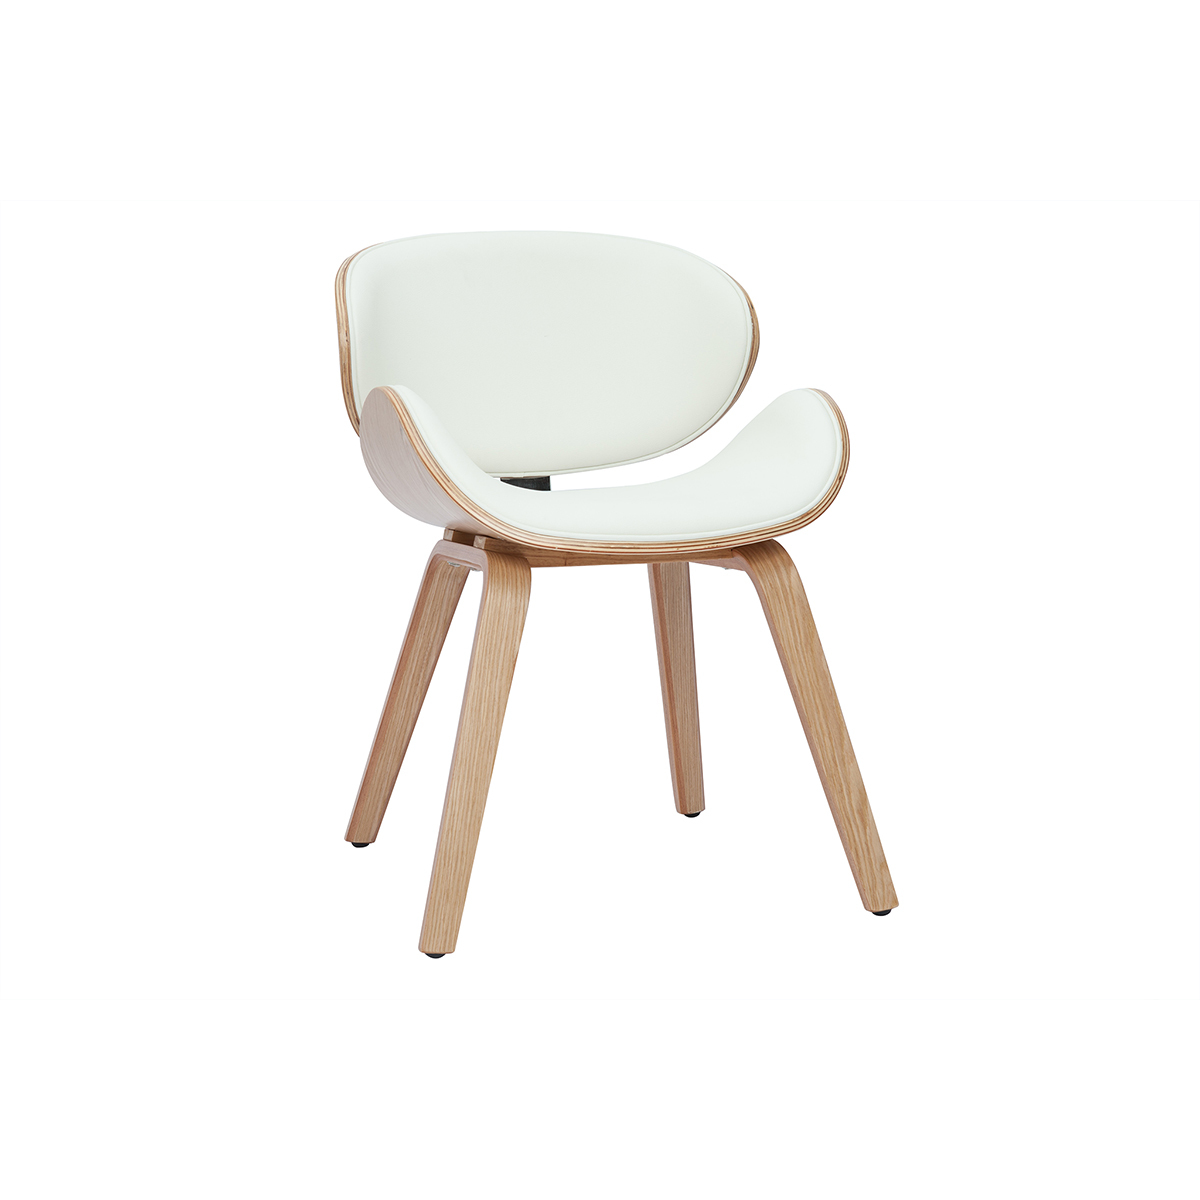 Sedia design bianco e legno chiaro WALNUT